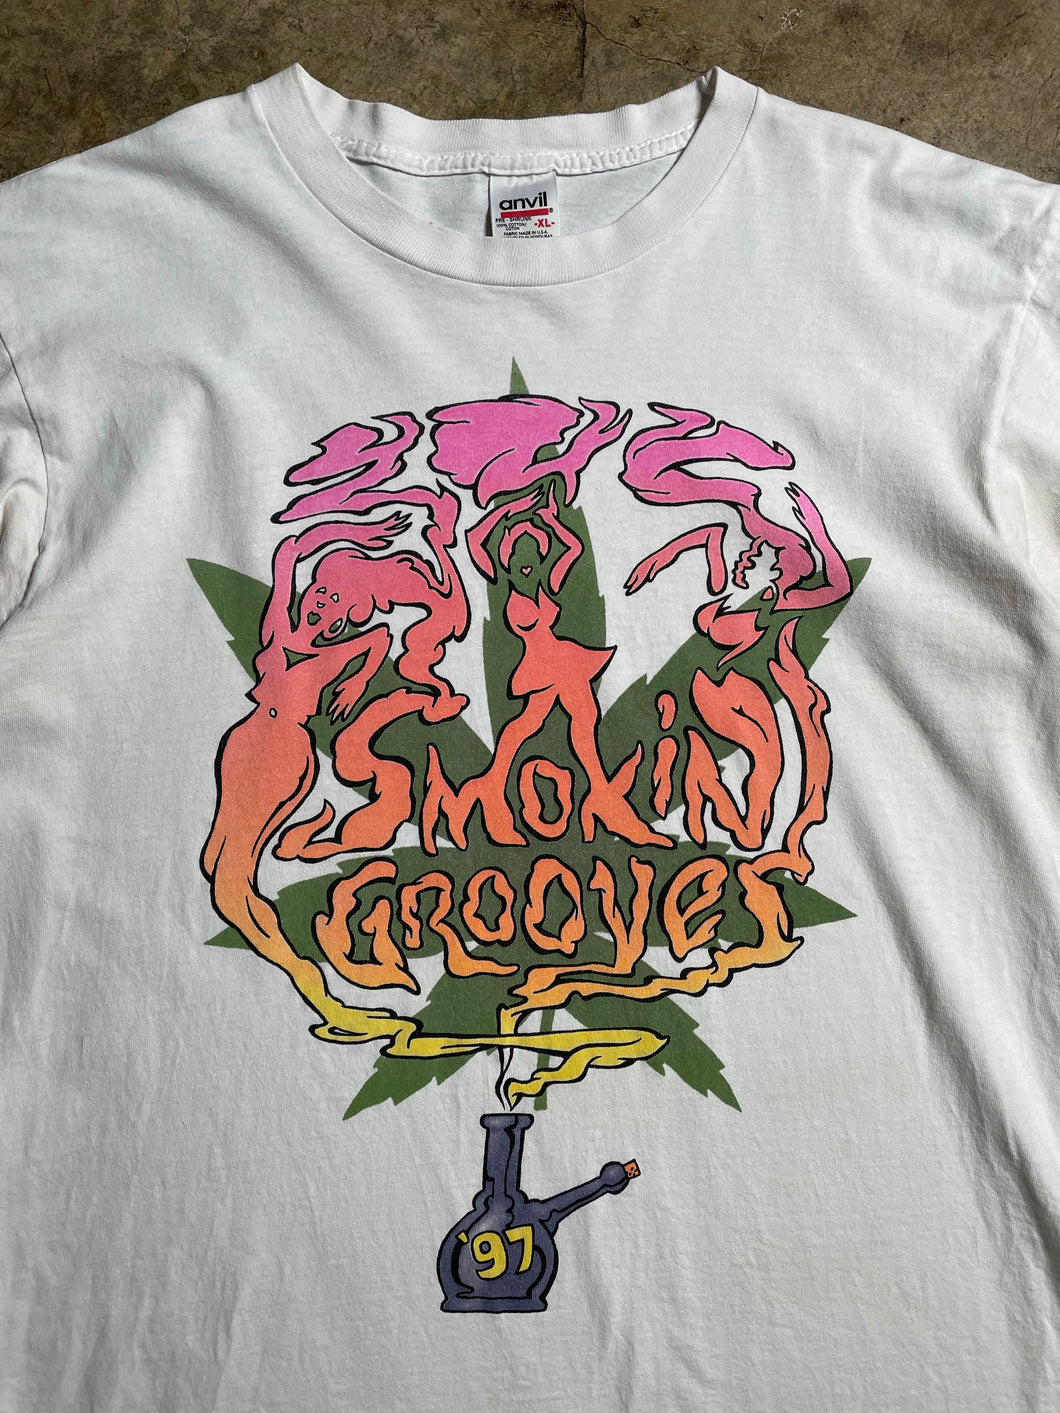 1997 Smokin’ Grooves Tour Tee - XL